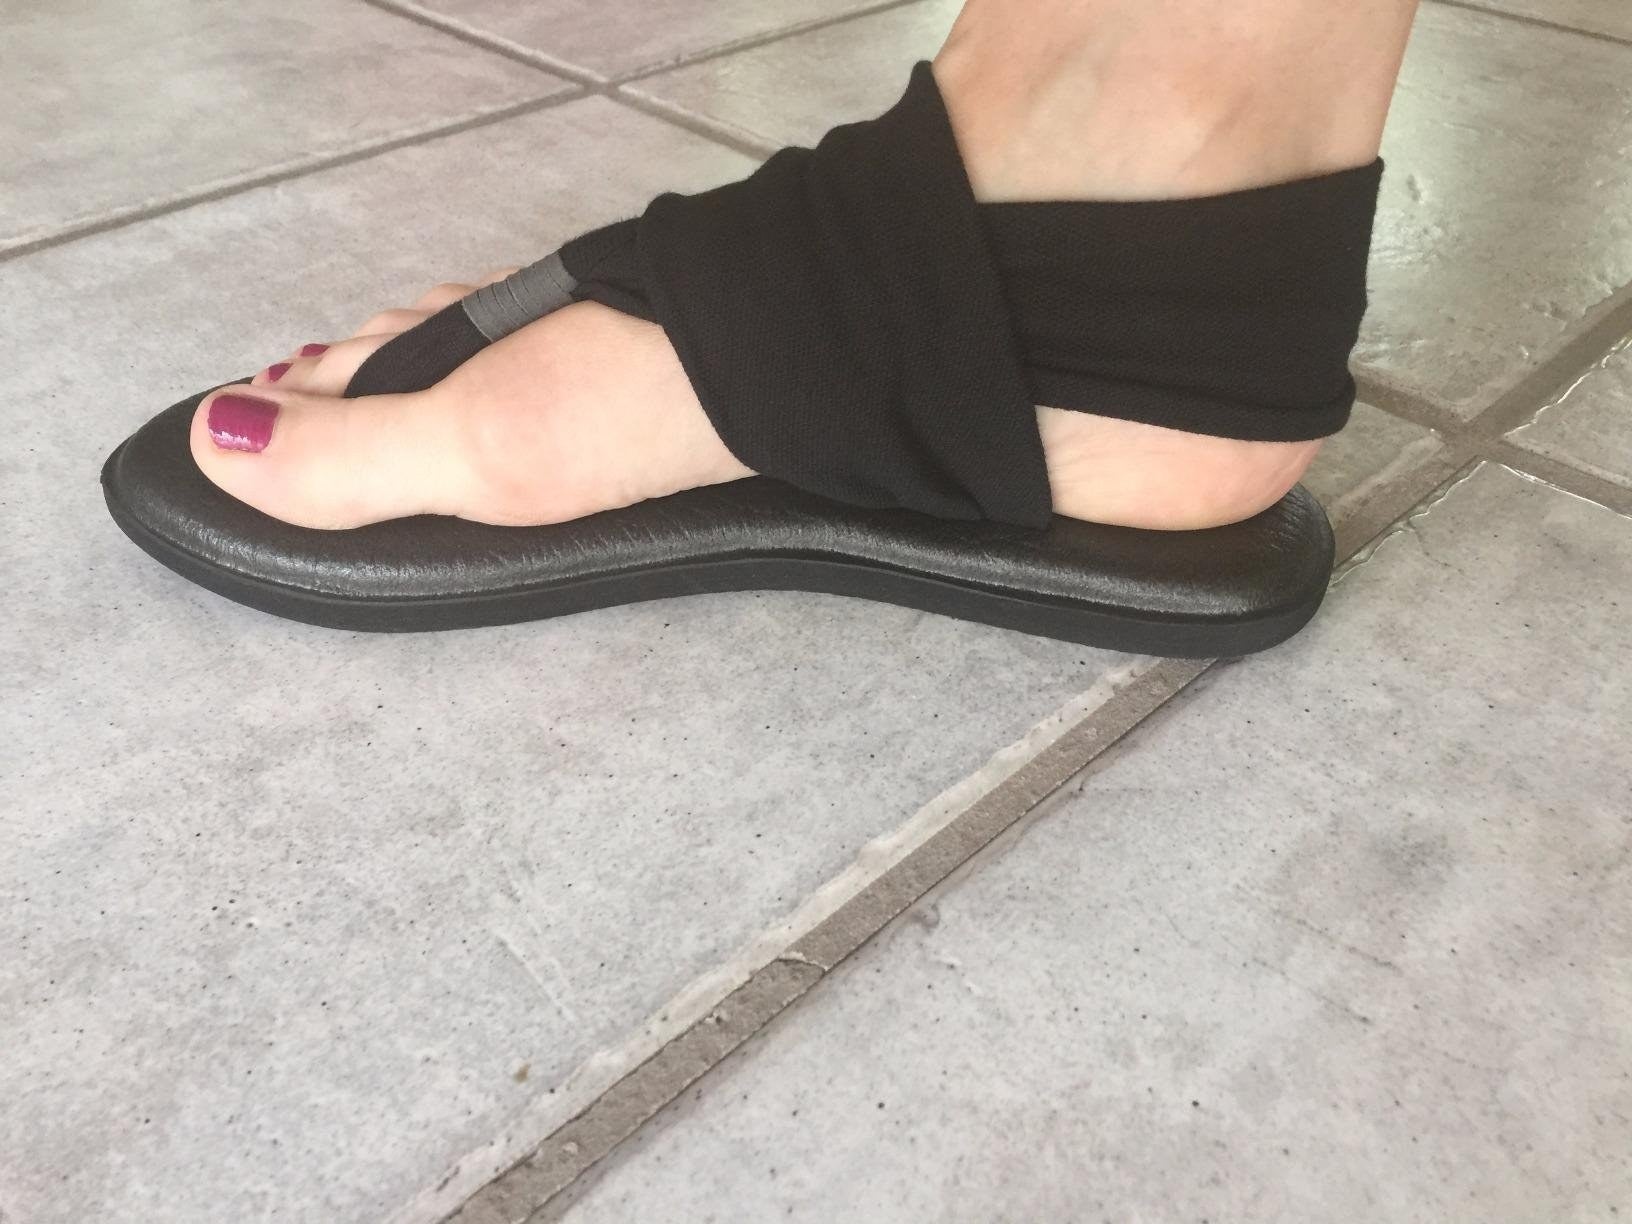 Sanuk Yoga Mat Black Sling Sandal Size 6 - $19 - From Susan